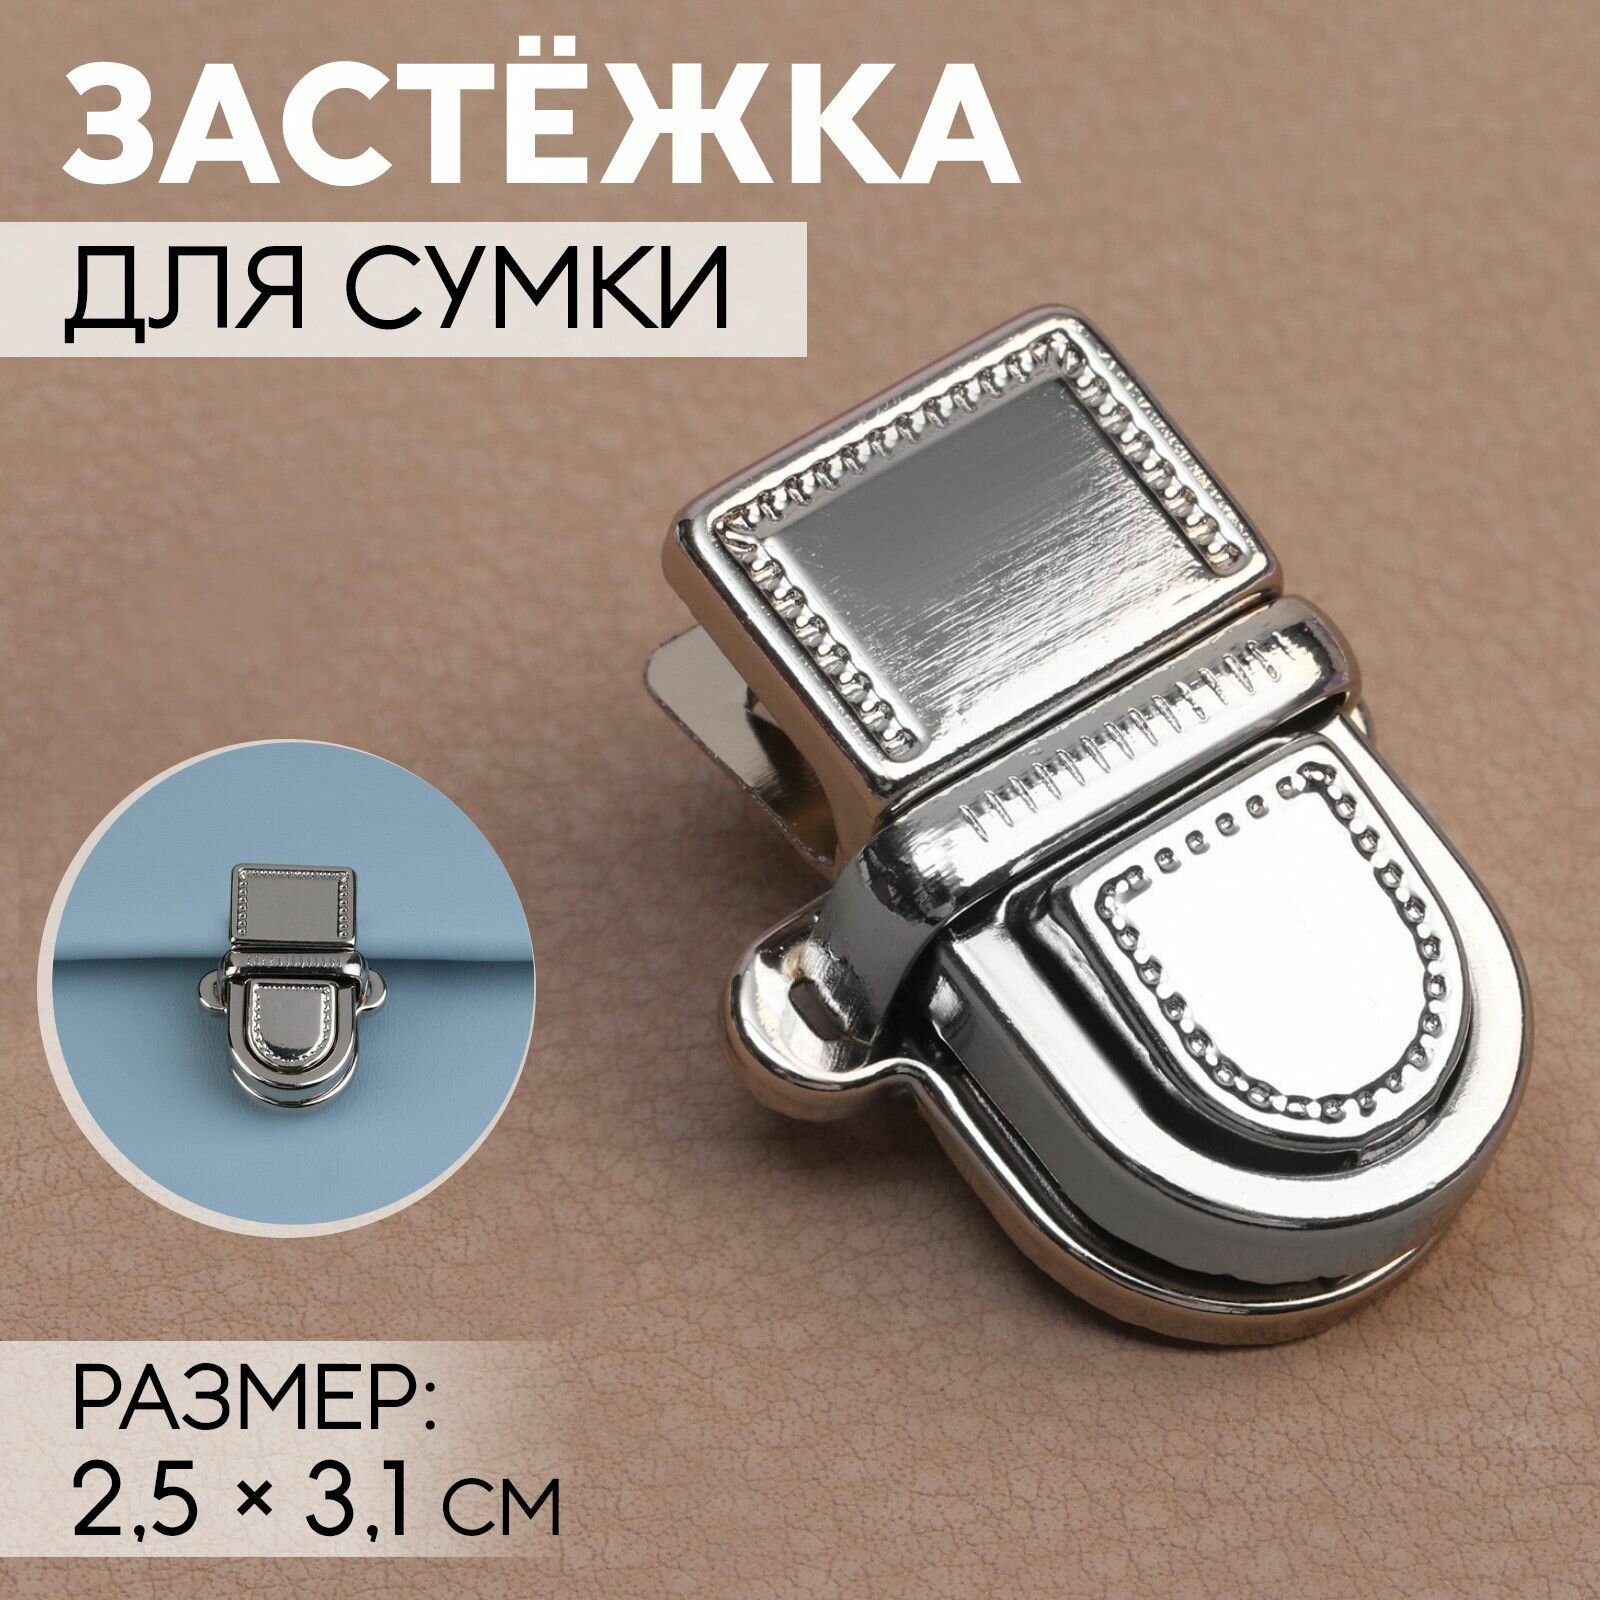 Застёжка (замок) для сумки серебристая (цвет серебро) 2,5х3,1 см - фурнитура для сумок